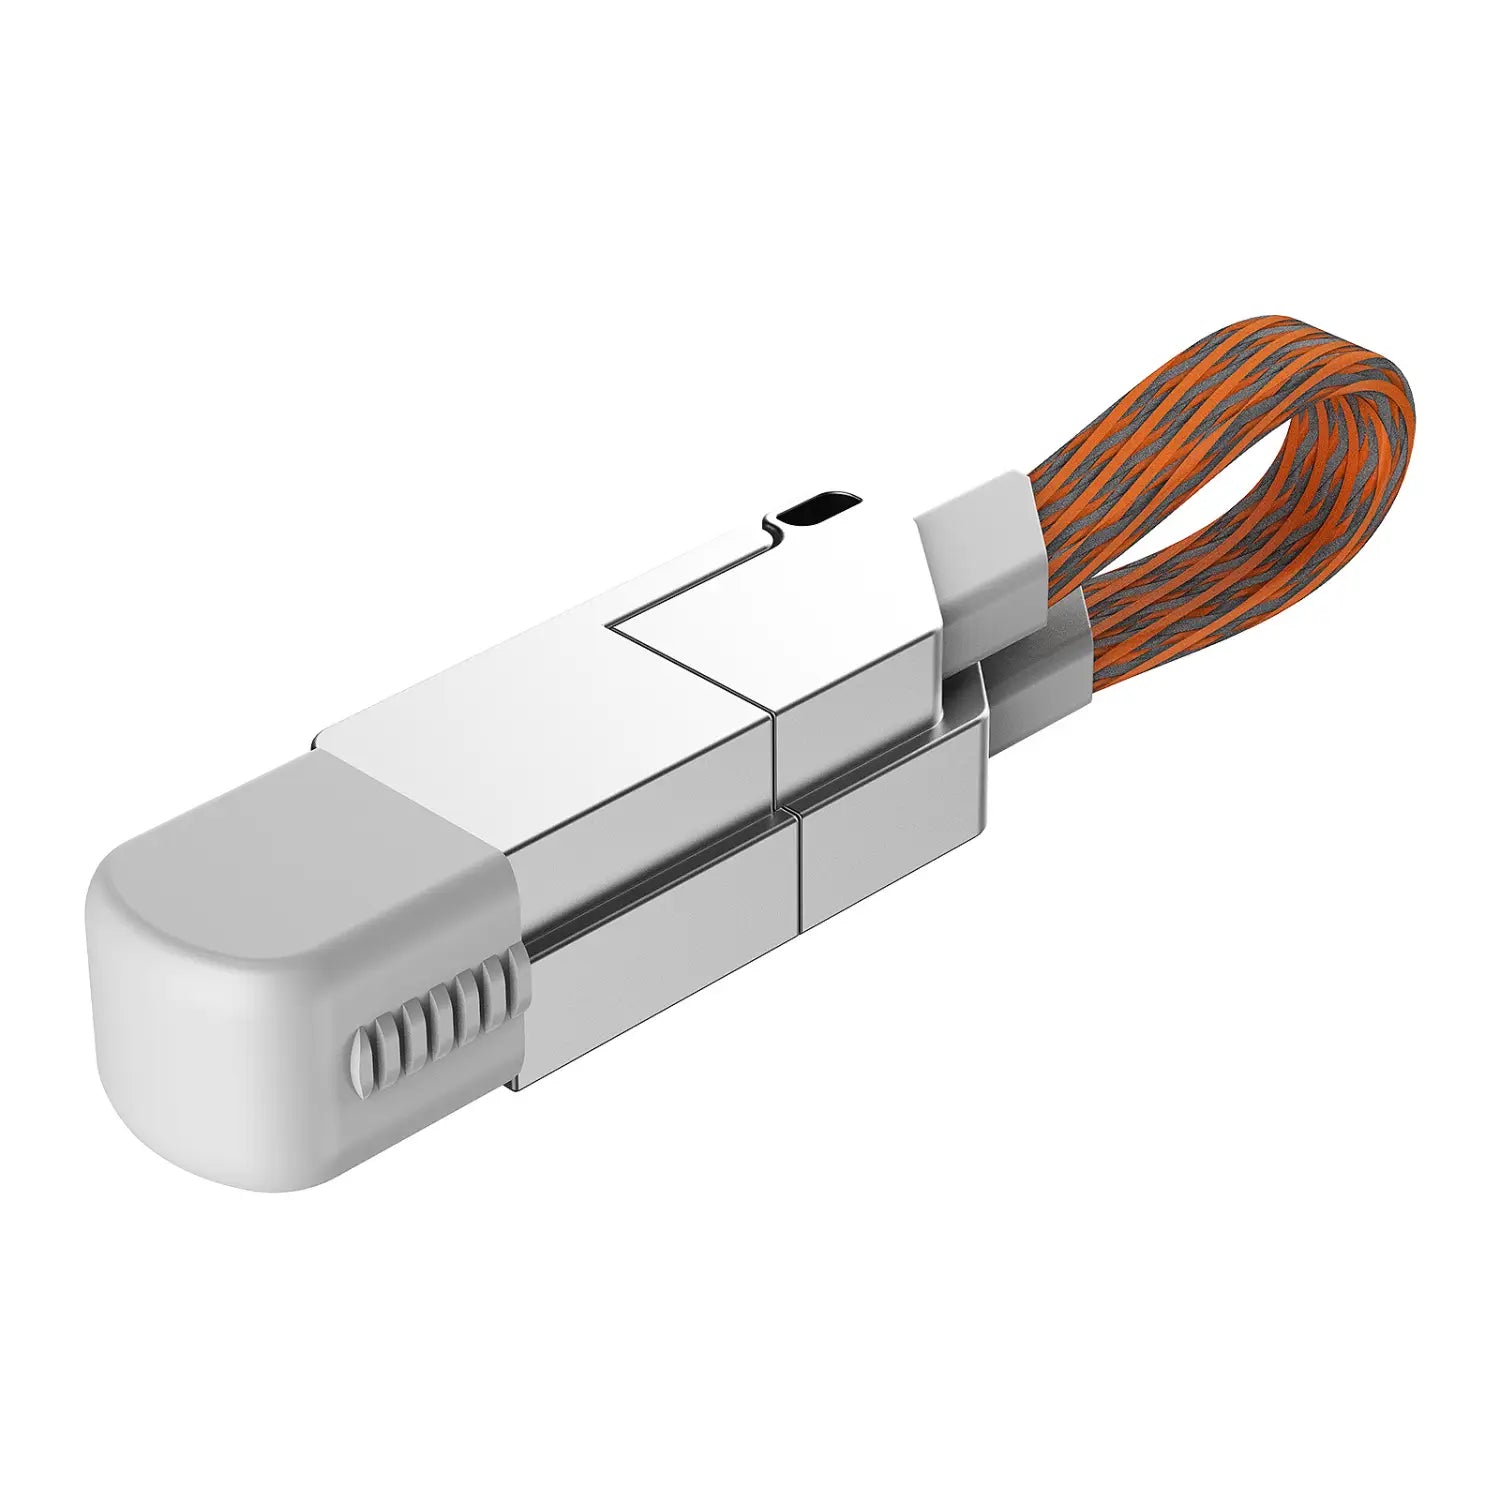 Saber-wire Portable Keychain